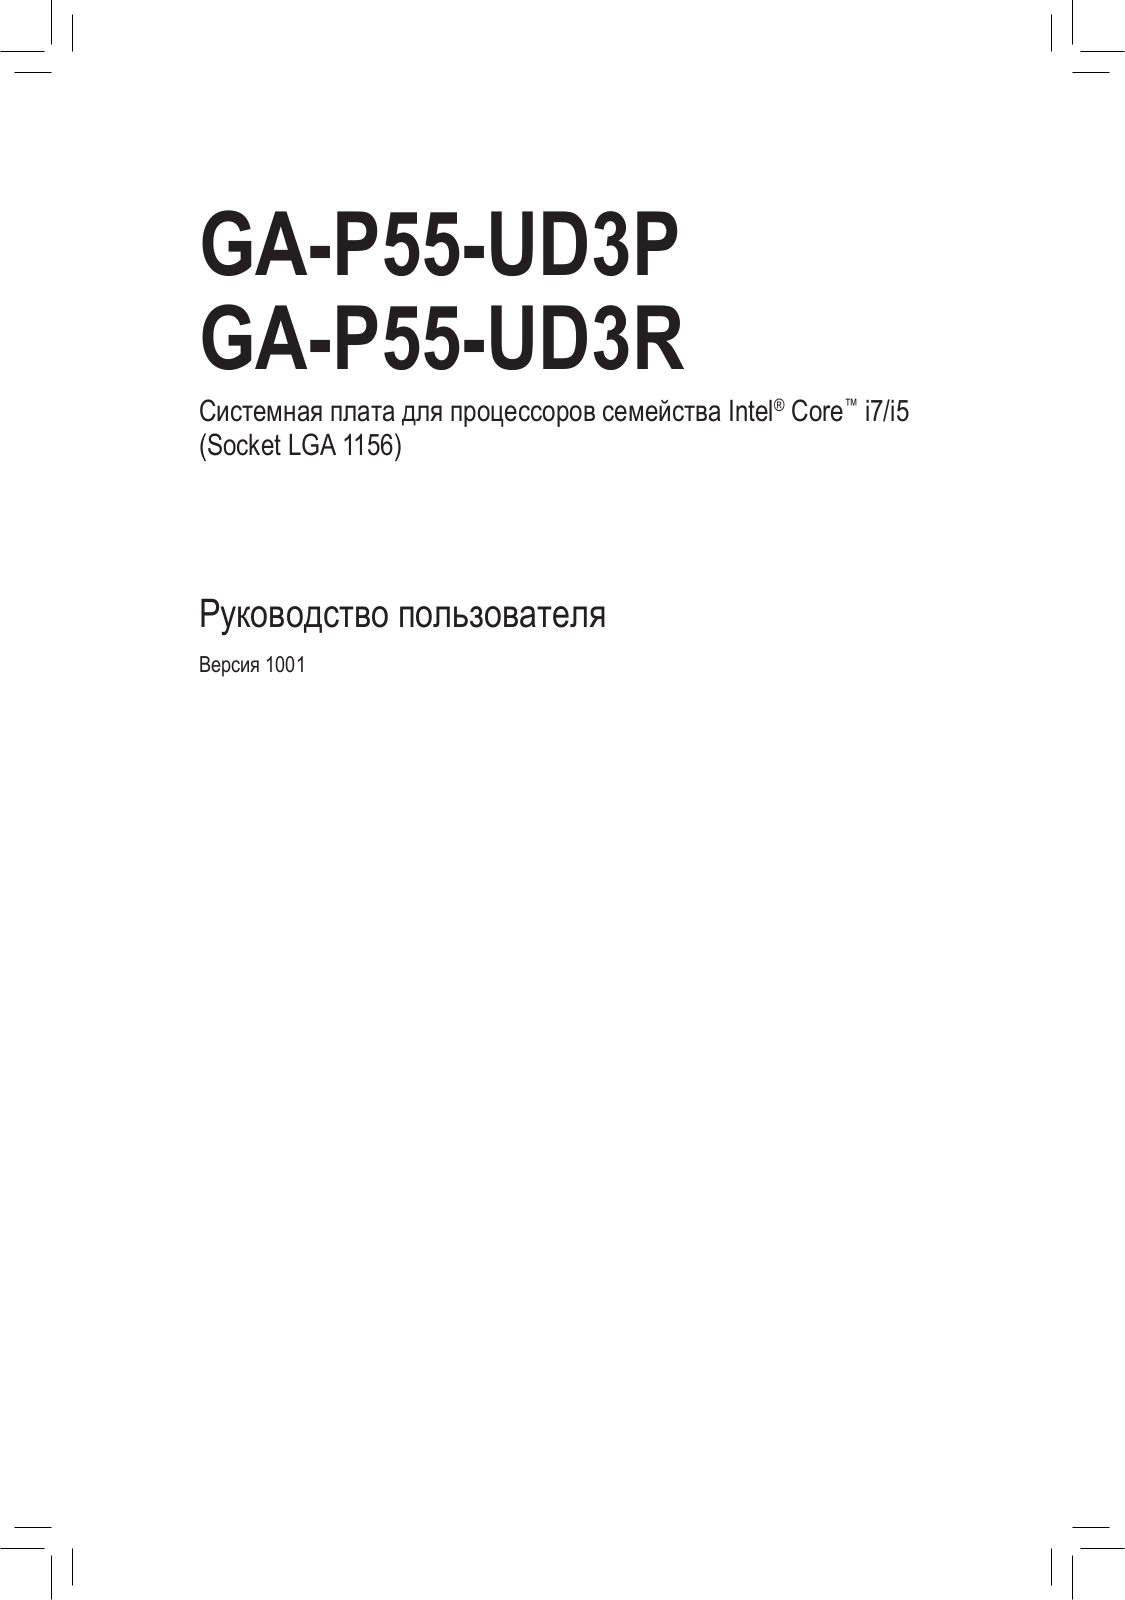 Gigabyte GA-P55-UD3R (rev. 1.0), GA-P55-UD3P (rev. 1.0) User Manual